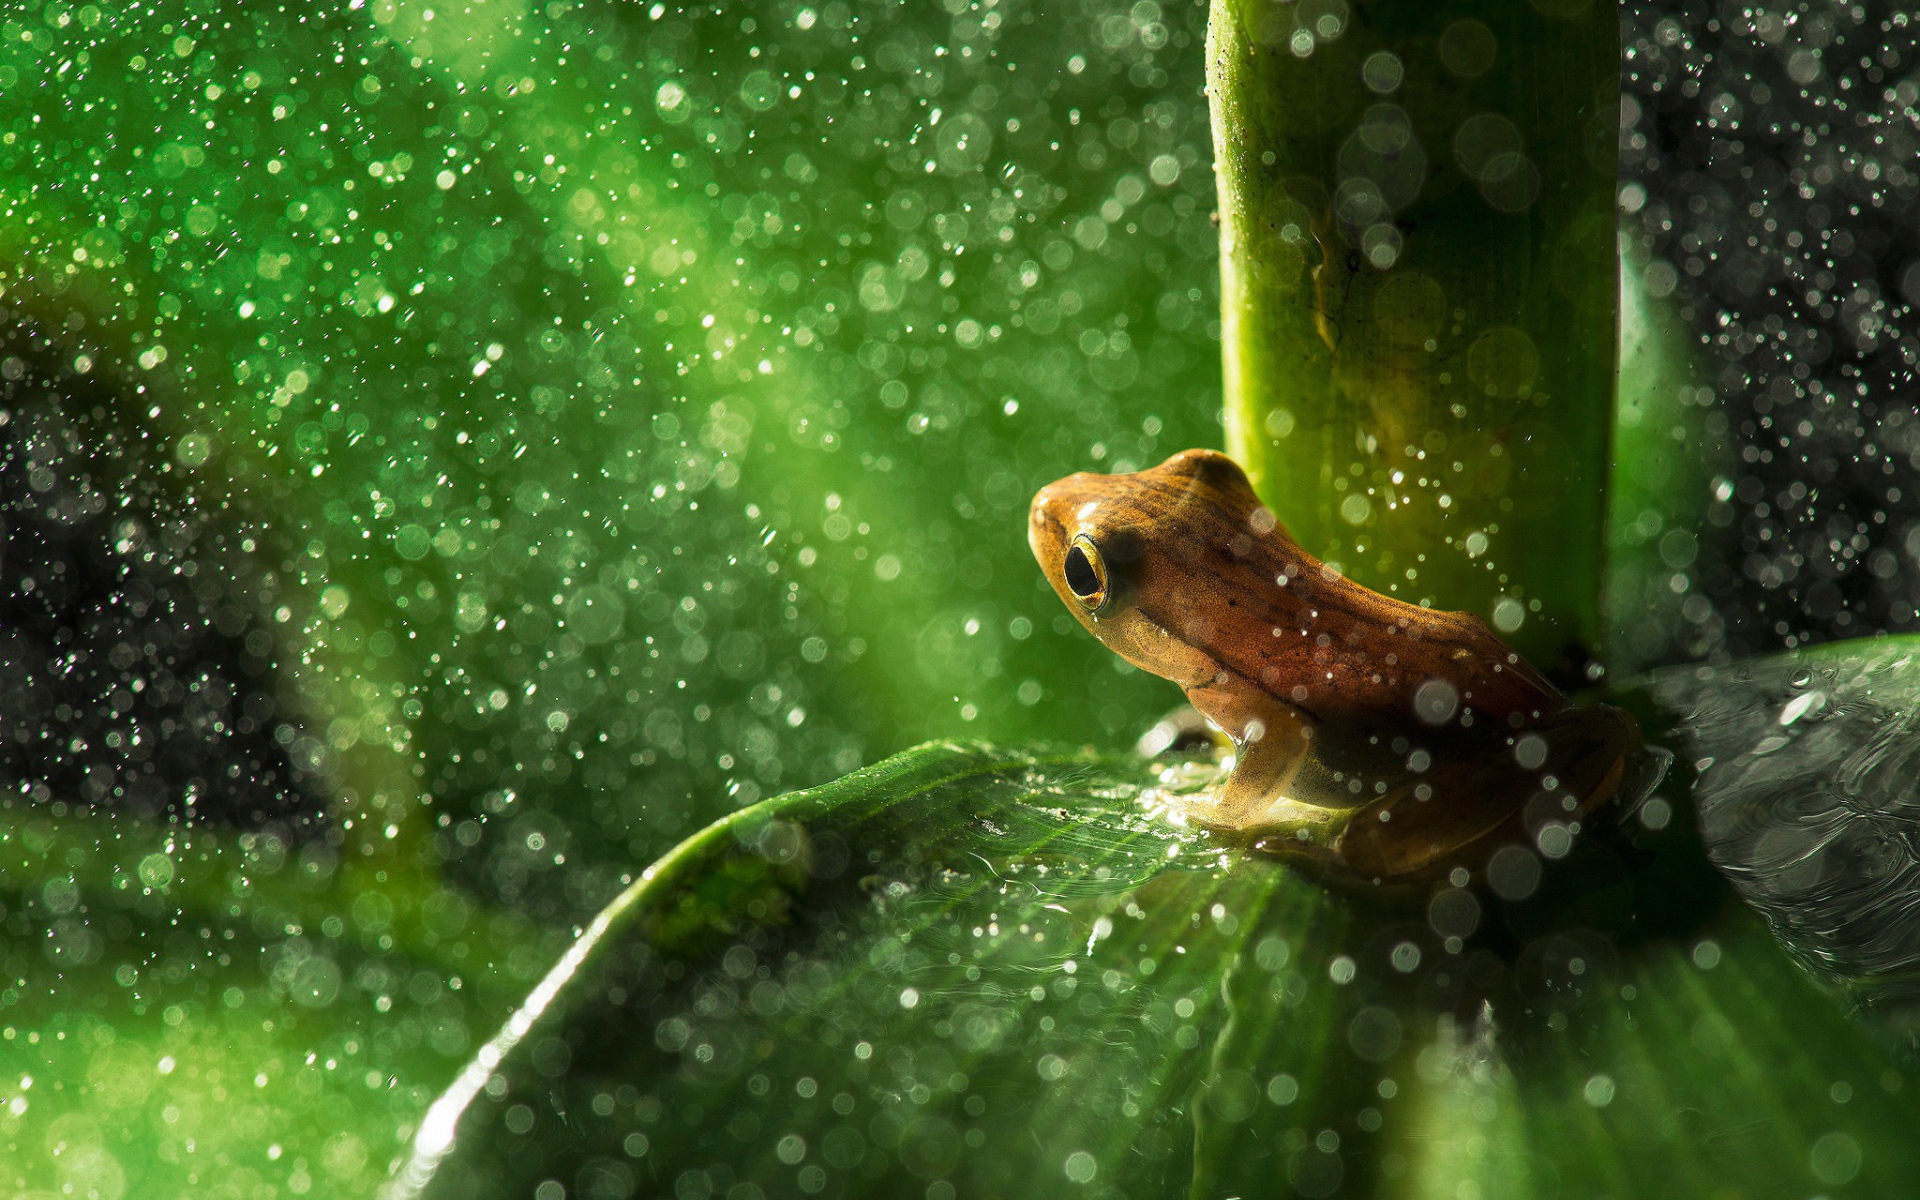 Лягушка пережидает дождь сидя на листике